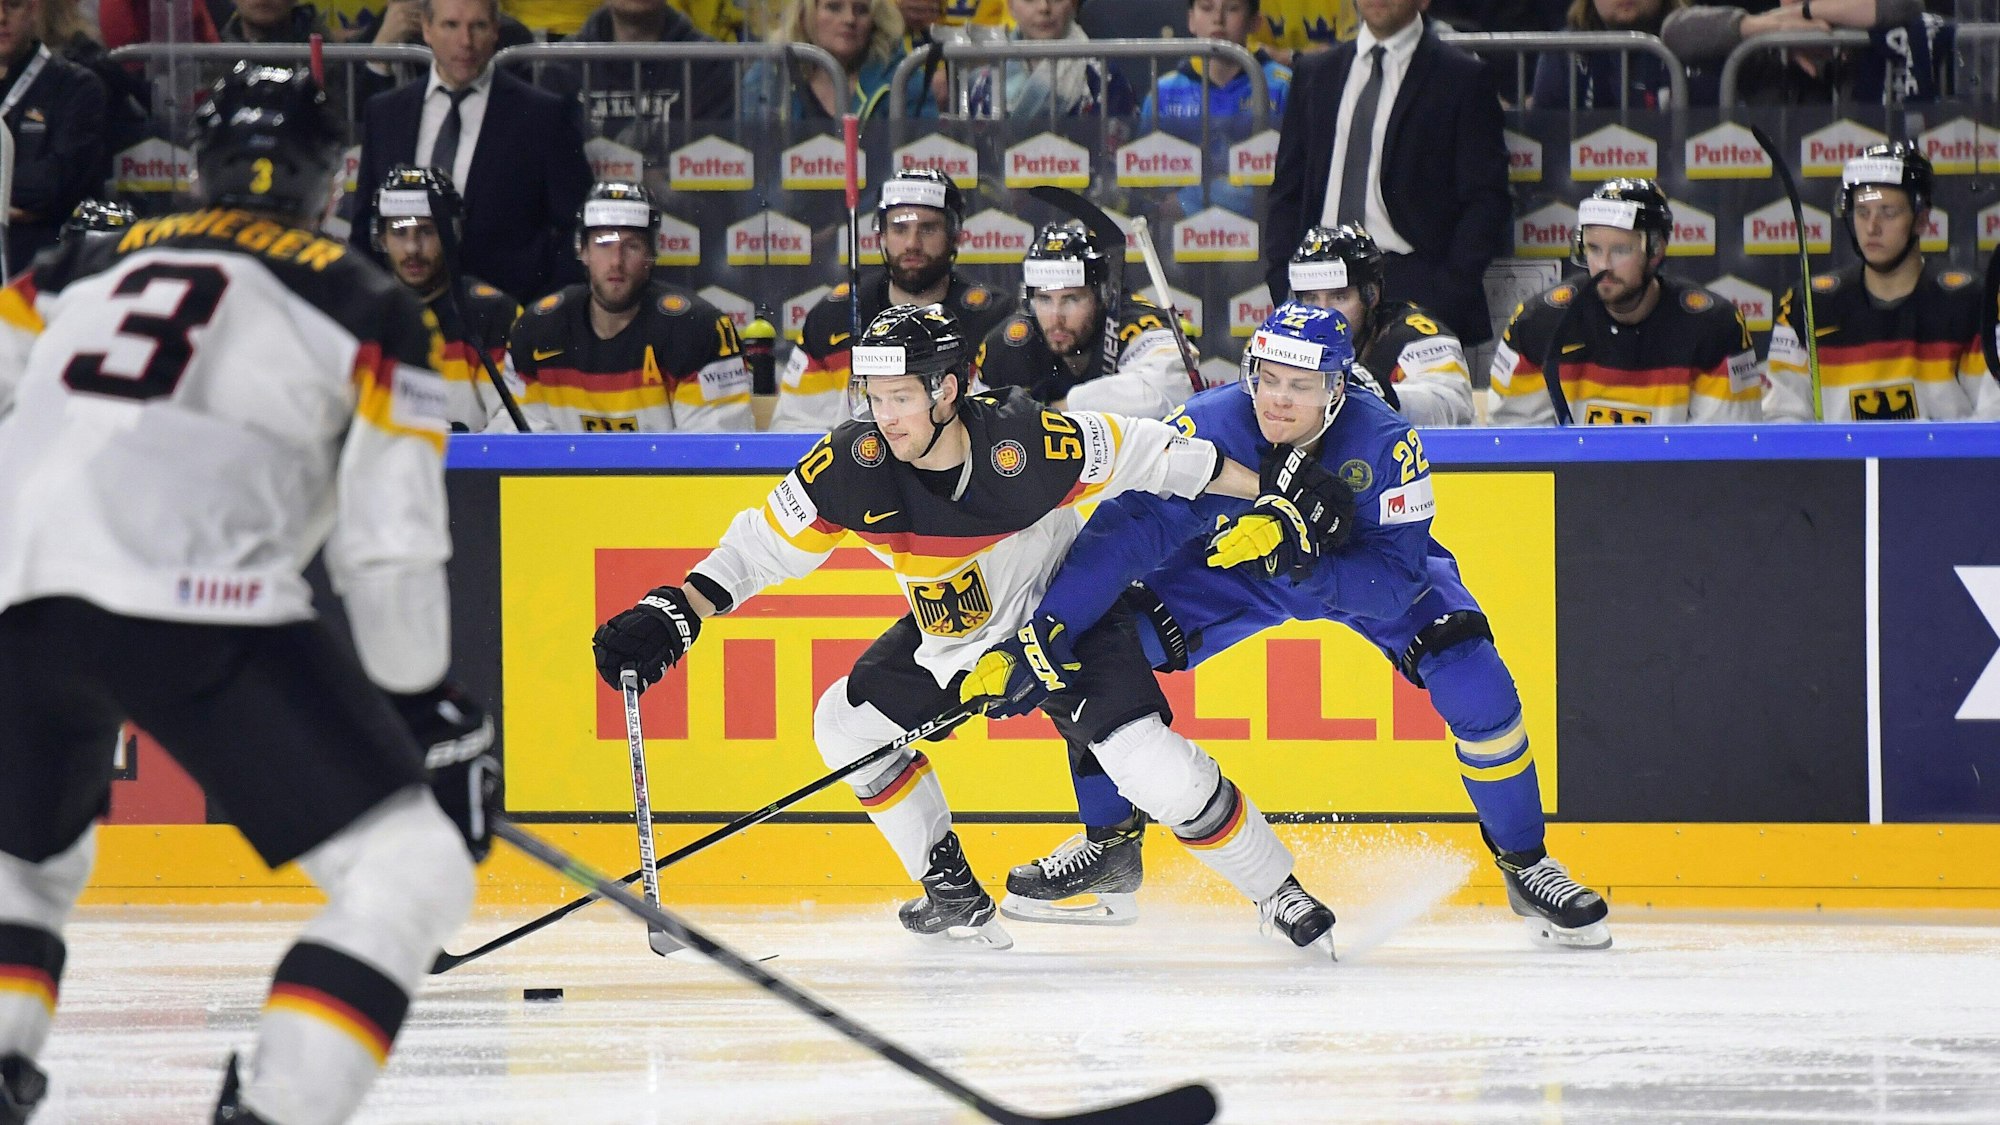 Zweikampf zwischen einem deutschen und schwedischen Spieler bei der Eishockey-WM 2017 in Köln.